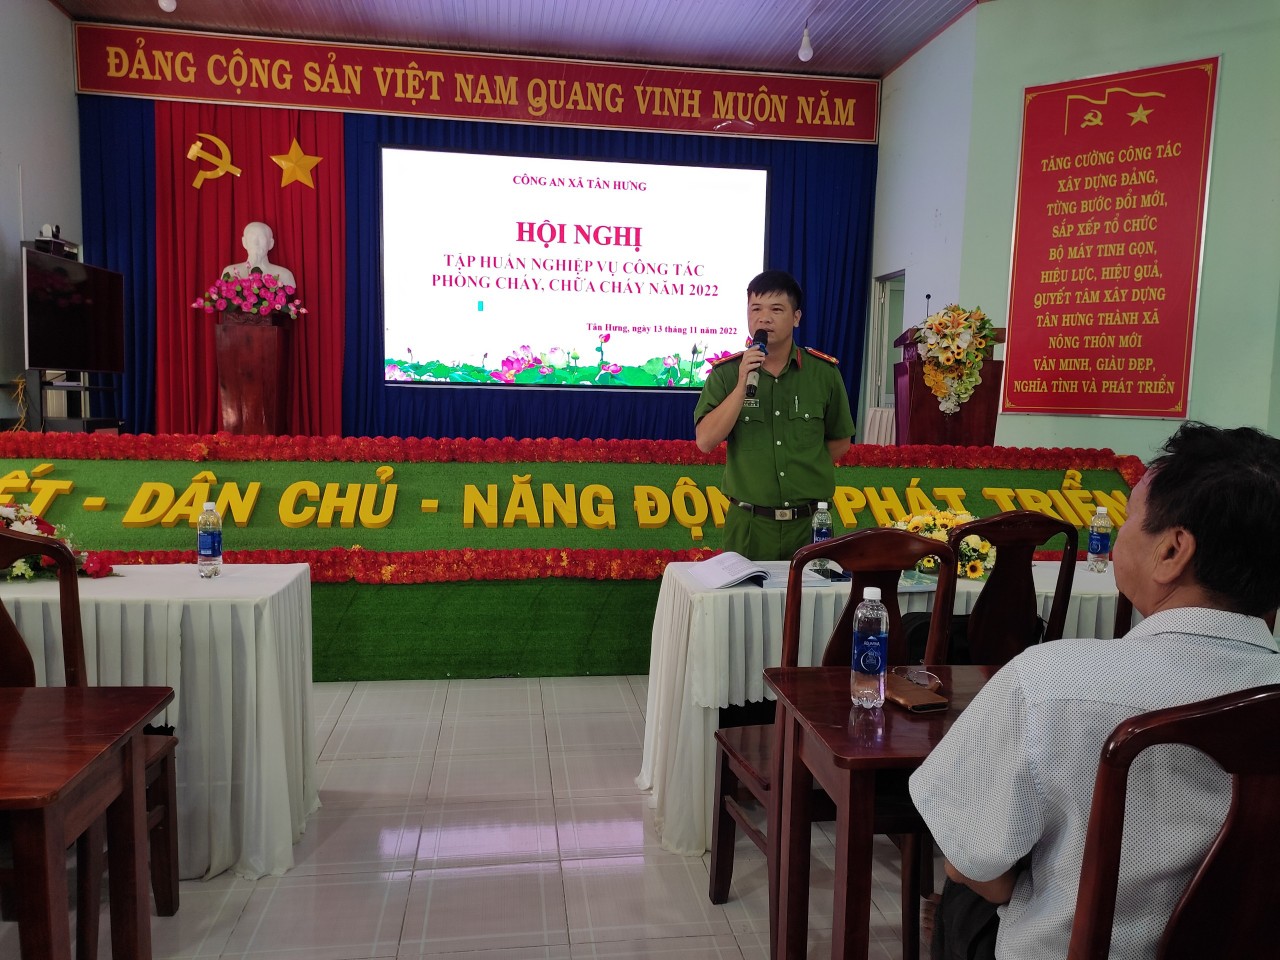 Công an xã Tâ Hưng, huyện Bàu Bàng tổ chức Hội nghị tuyên truyền, hướng dẫn và tập huấn về công tác phòng cháy, chữa cháy và cứu nạn, cứu hộ